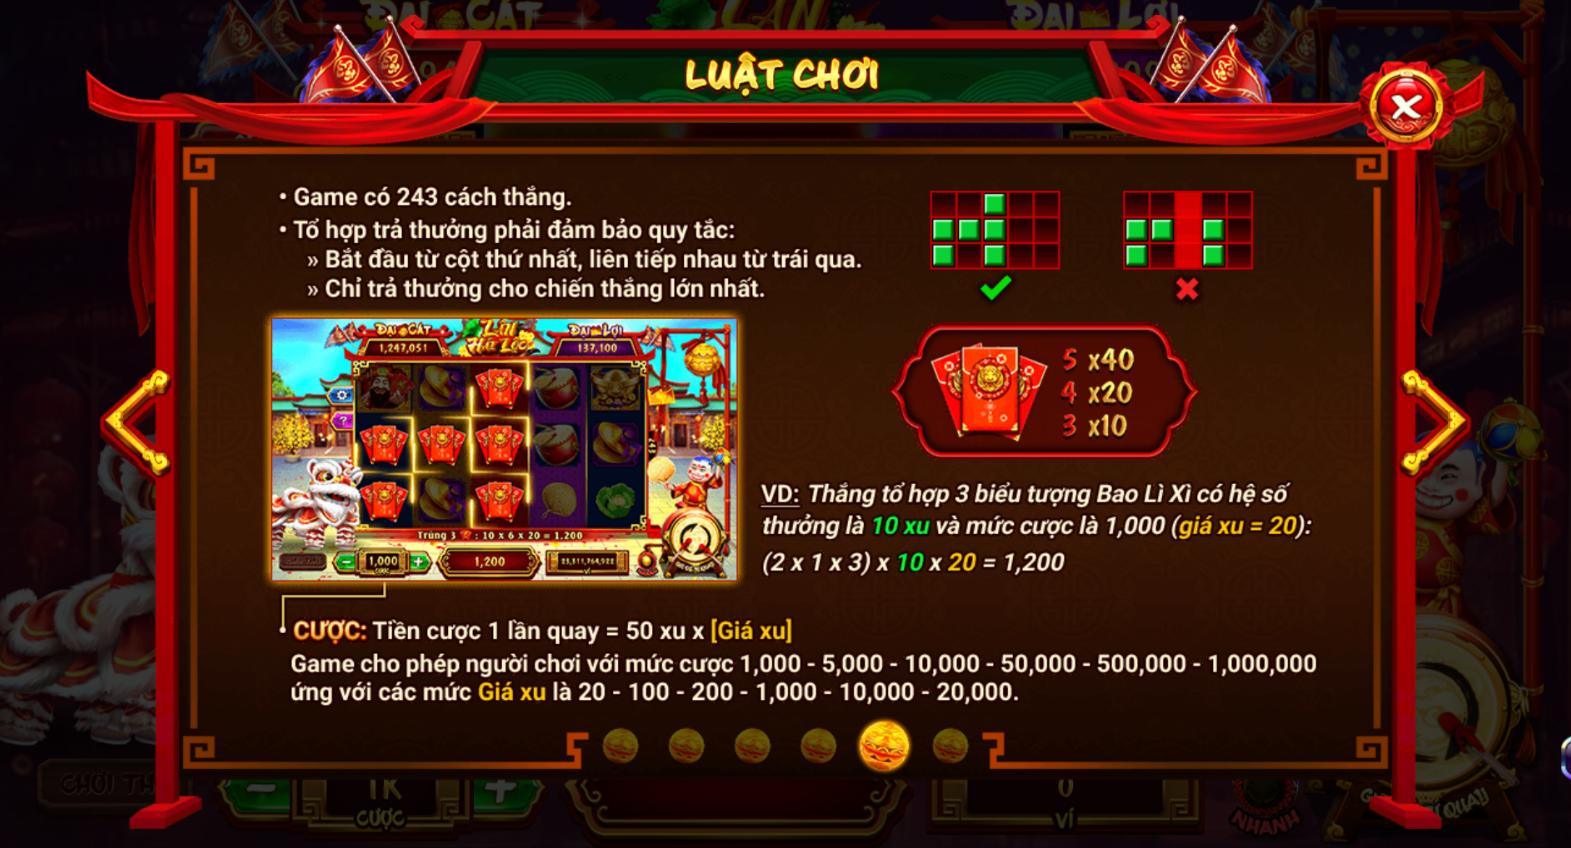 Hướng dẫn chơi game slots Lân Hái Lộc 789 club chi tiết và cụ thể nhất